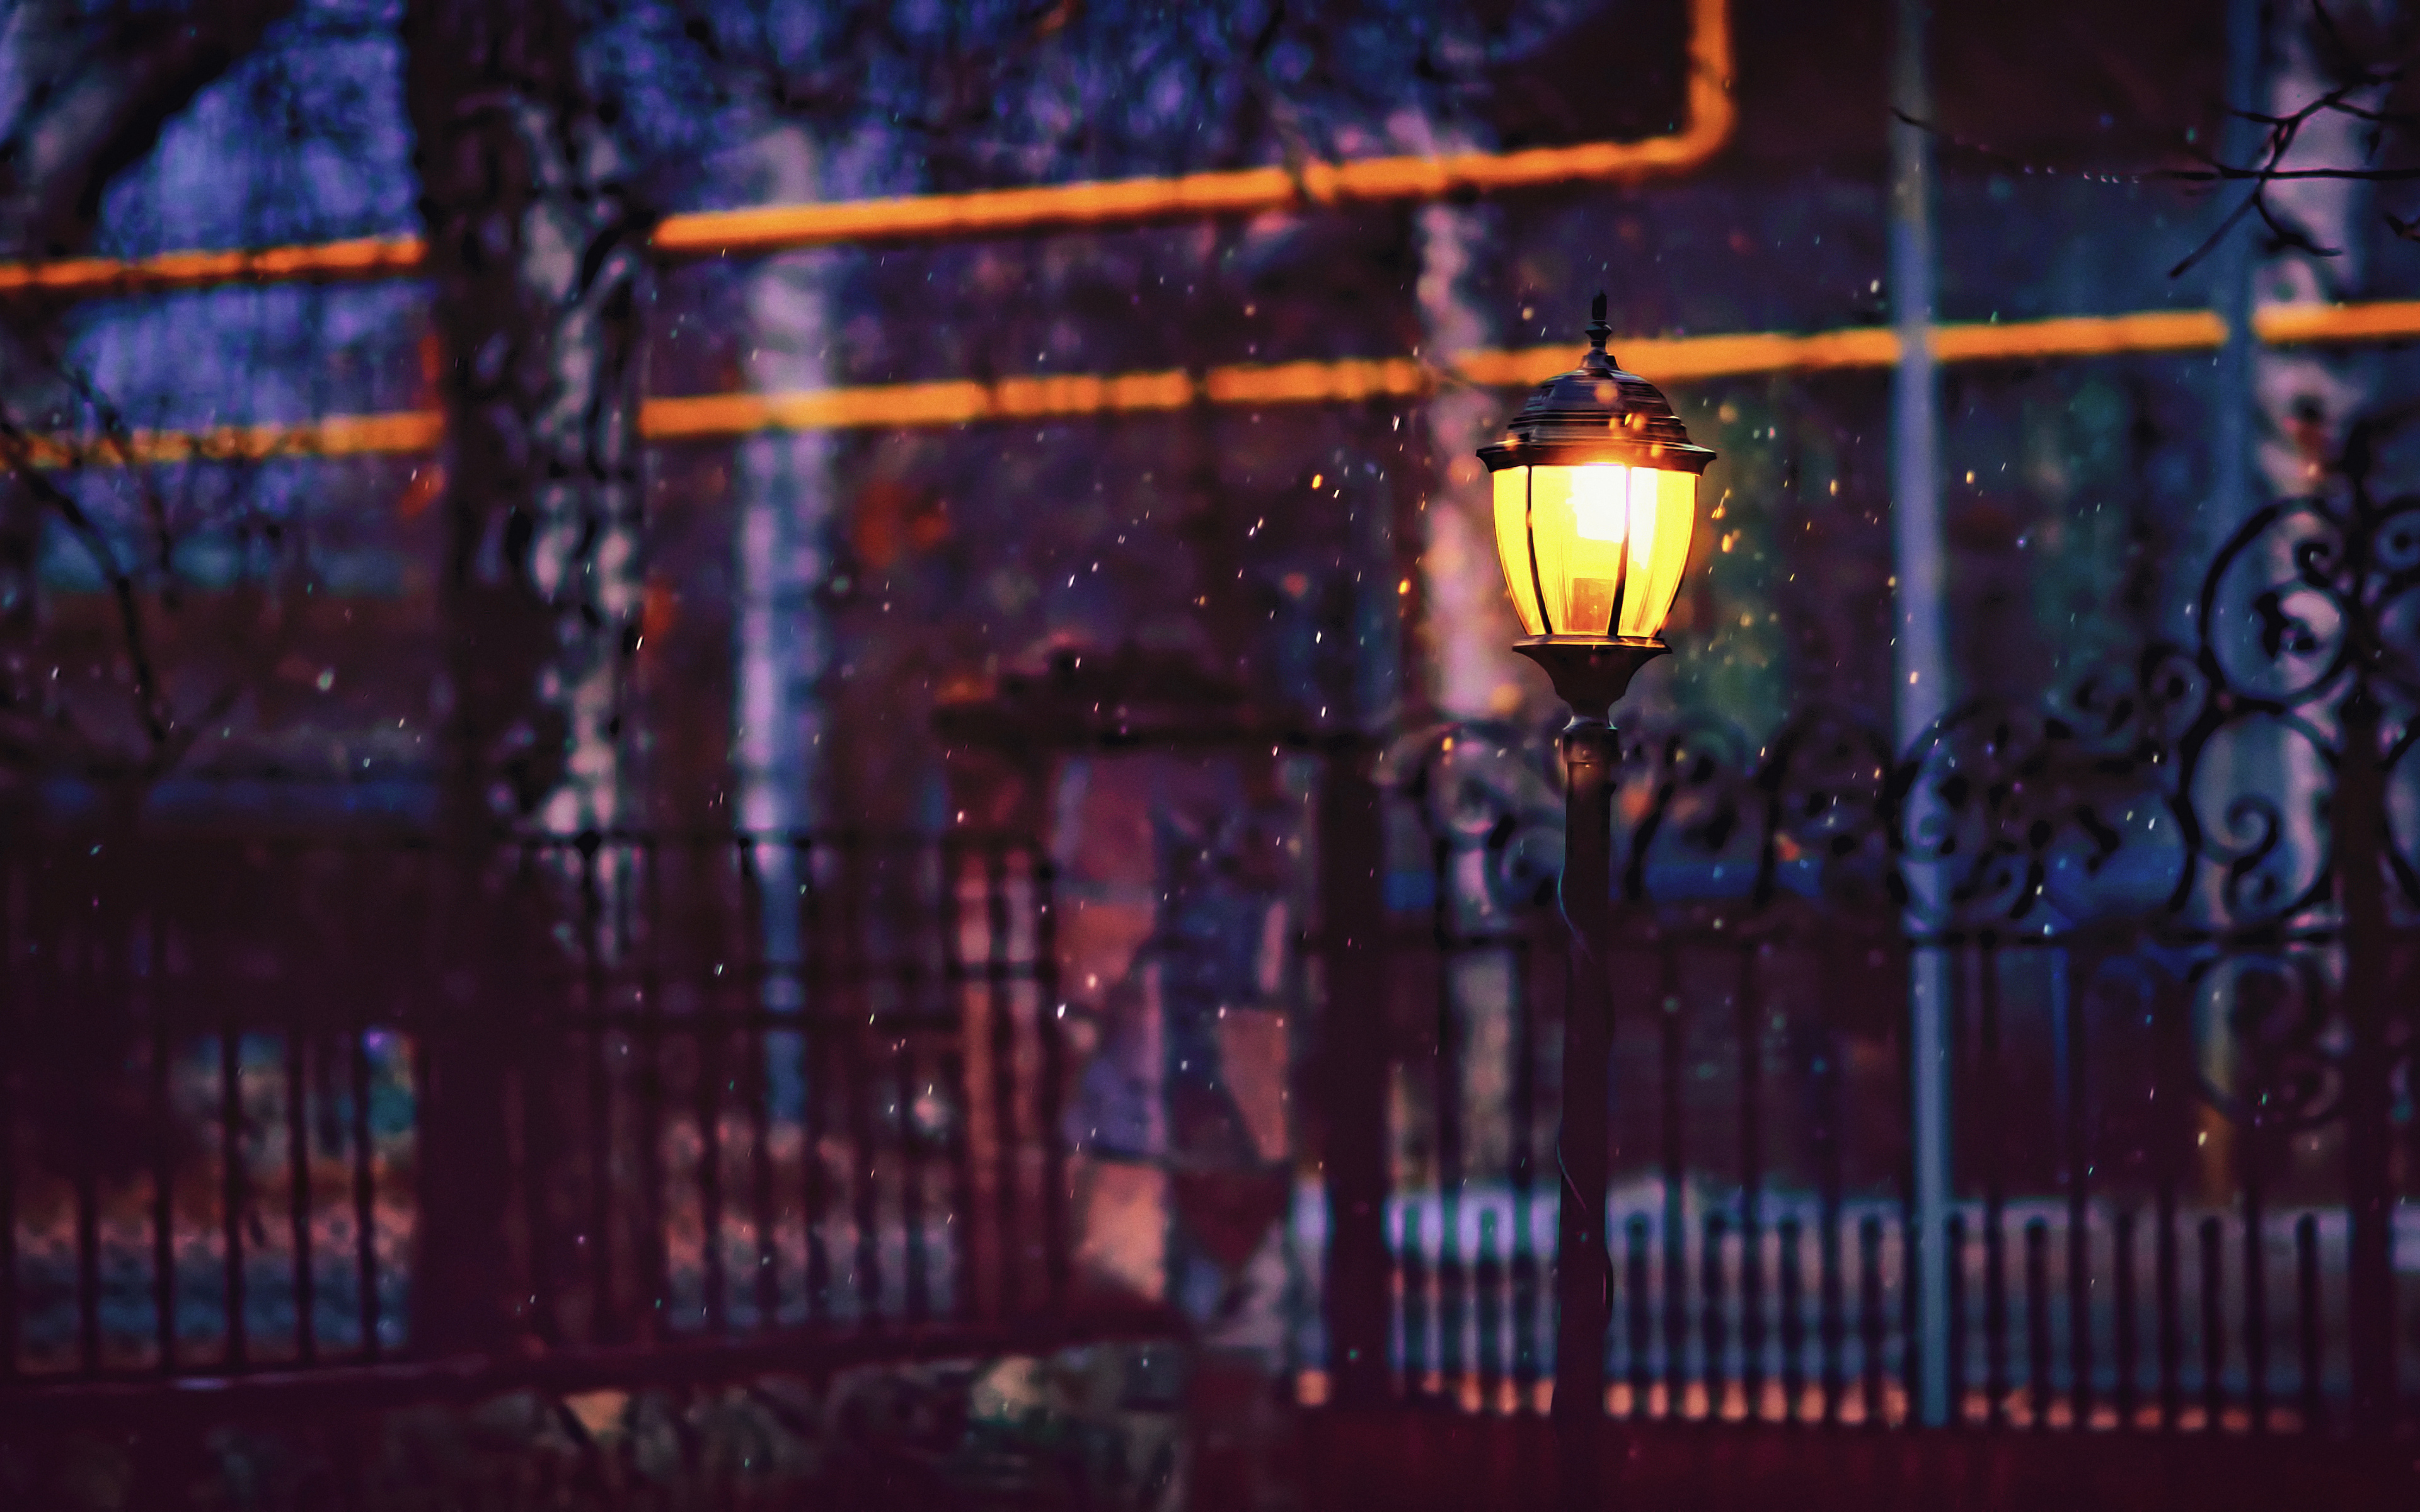 Хасанова свет фонарей. Фонарь на улице. Ночные фонари. Фонарь ночью. Зимний уличный фонарь.